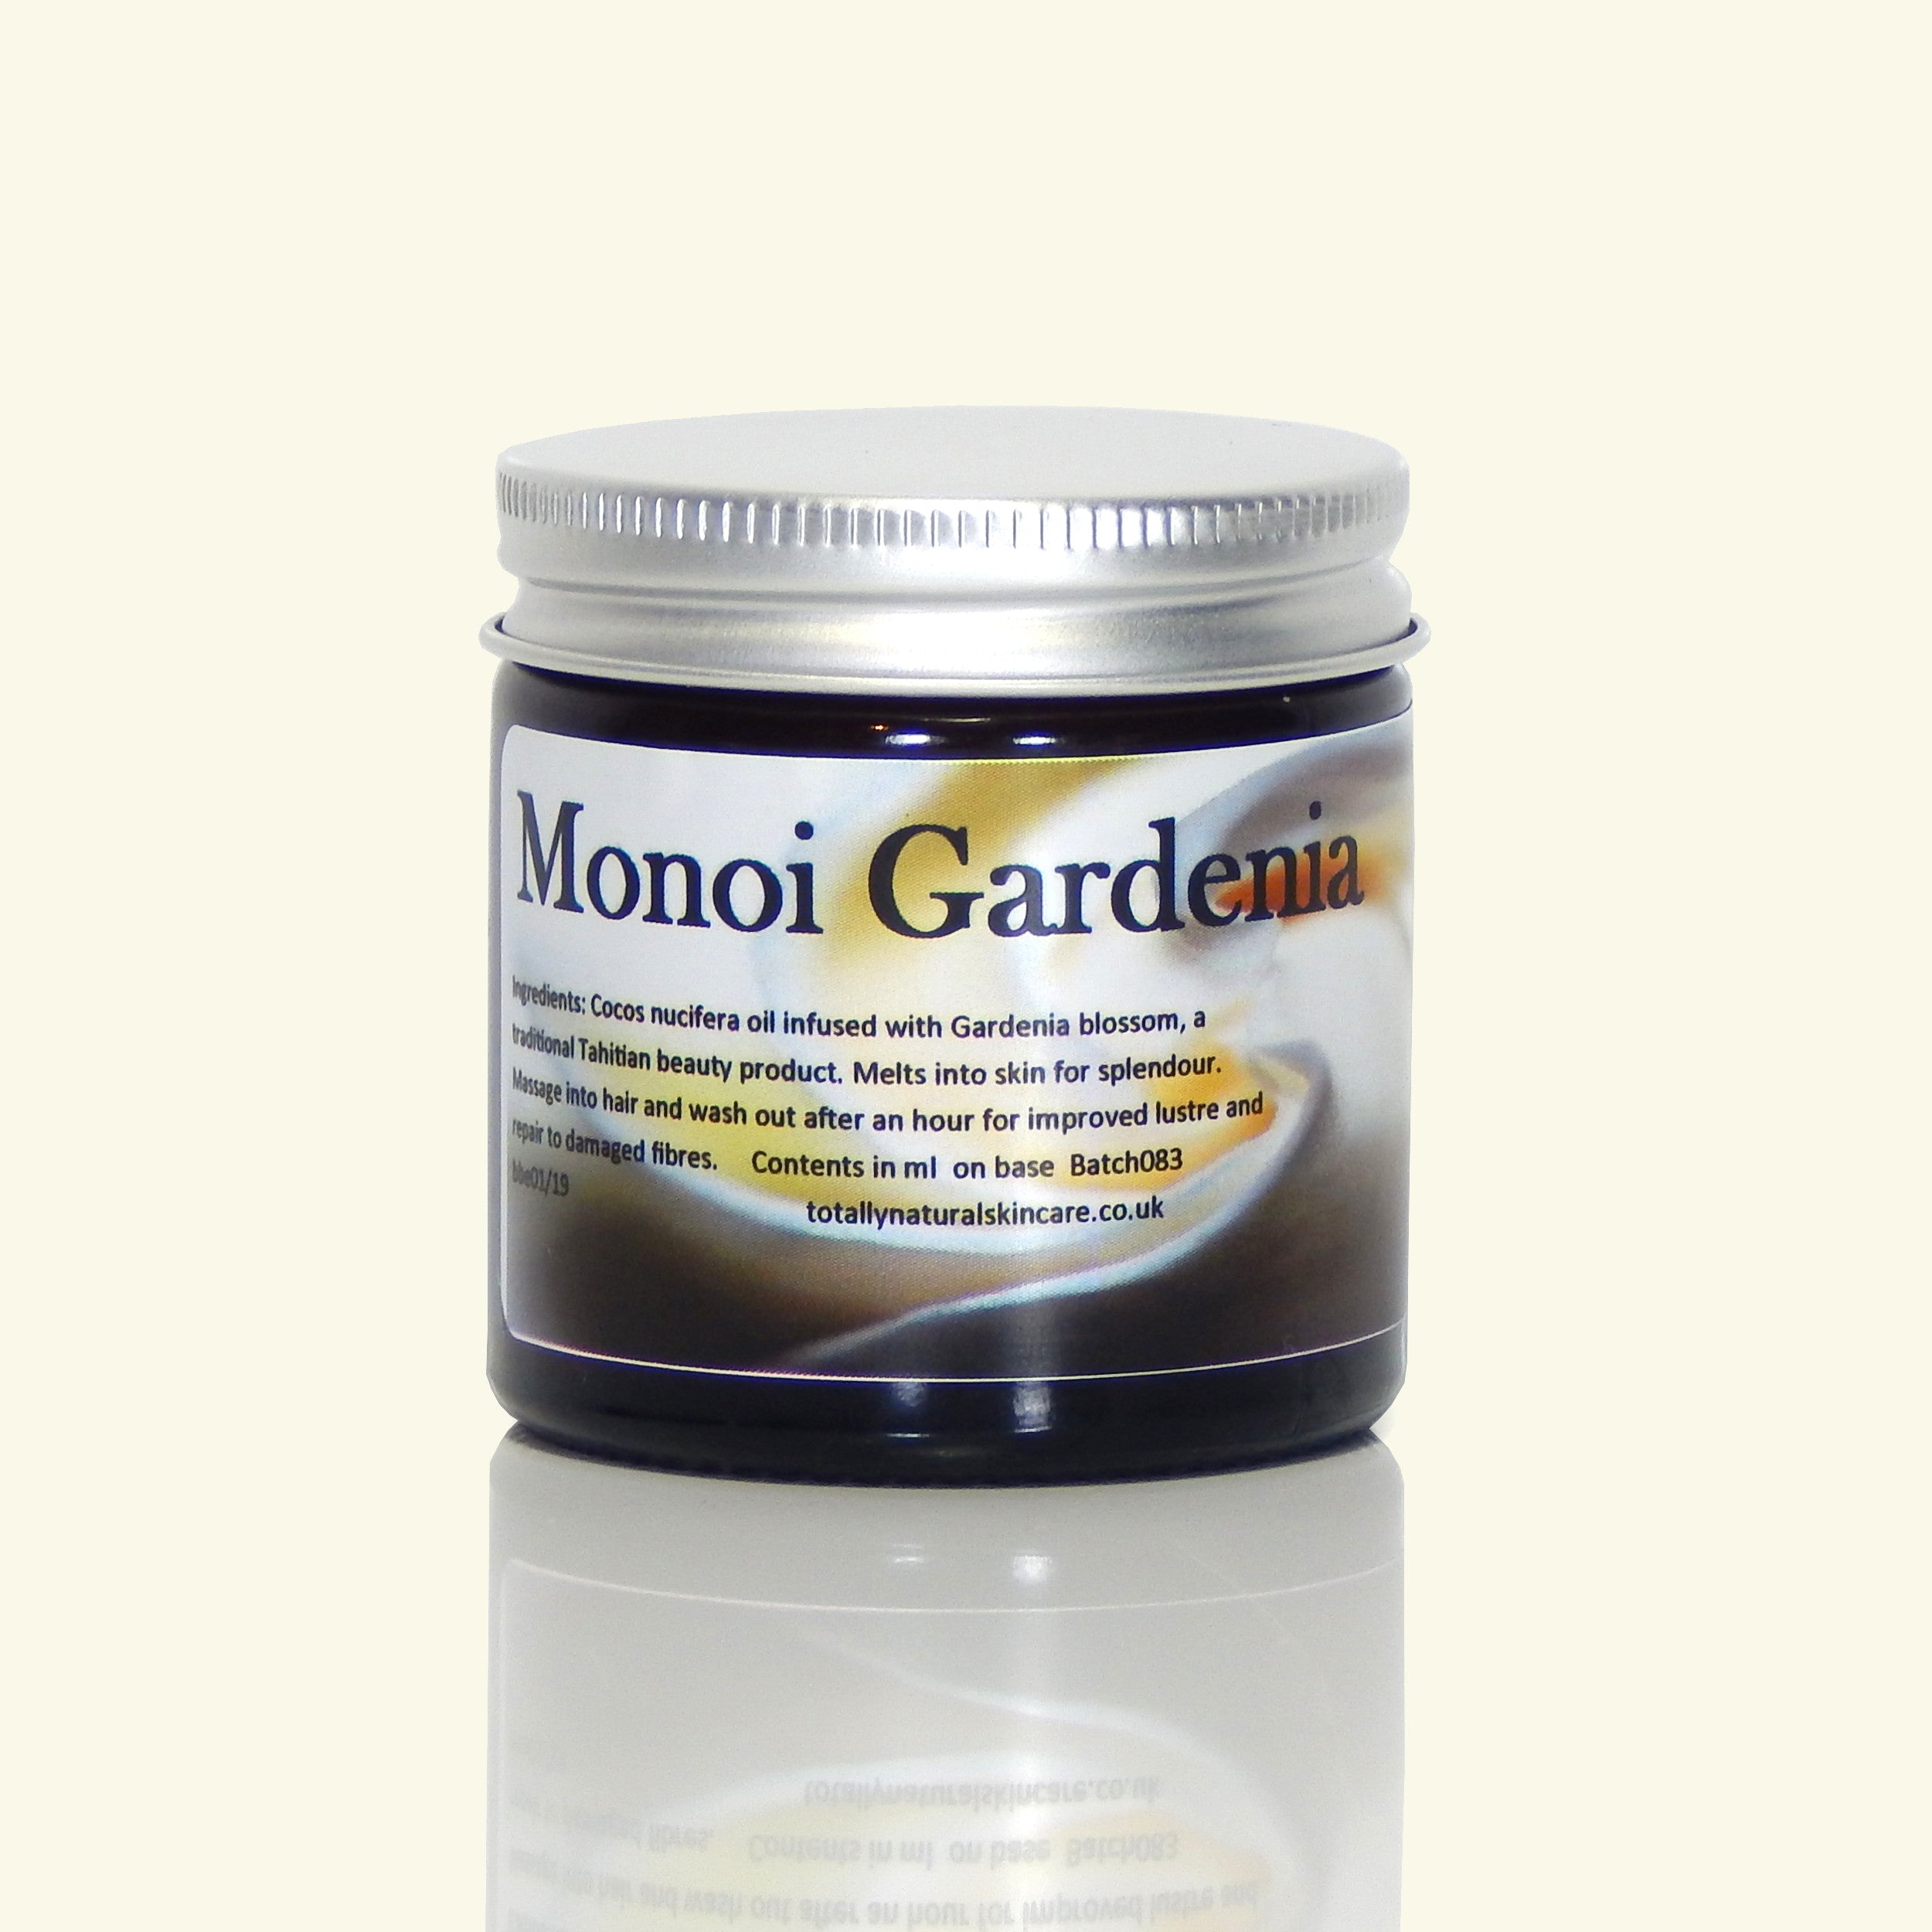 Monoi Gardenia